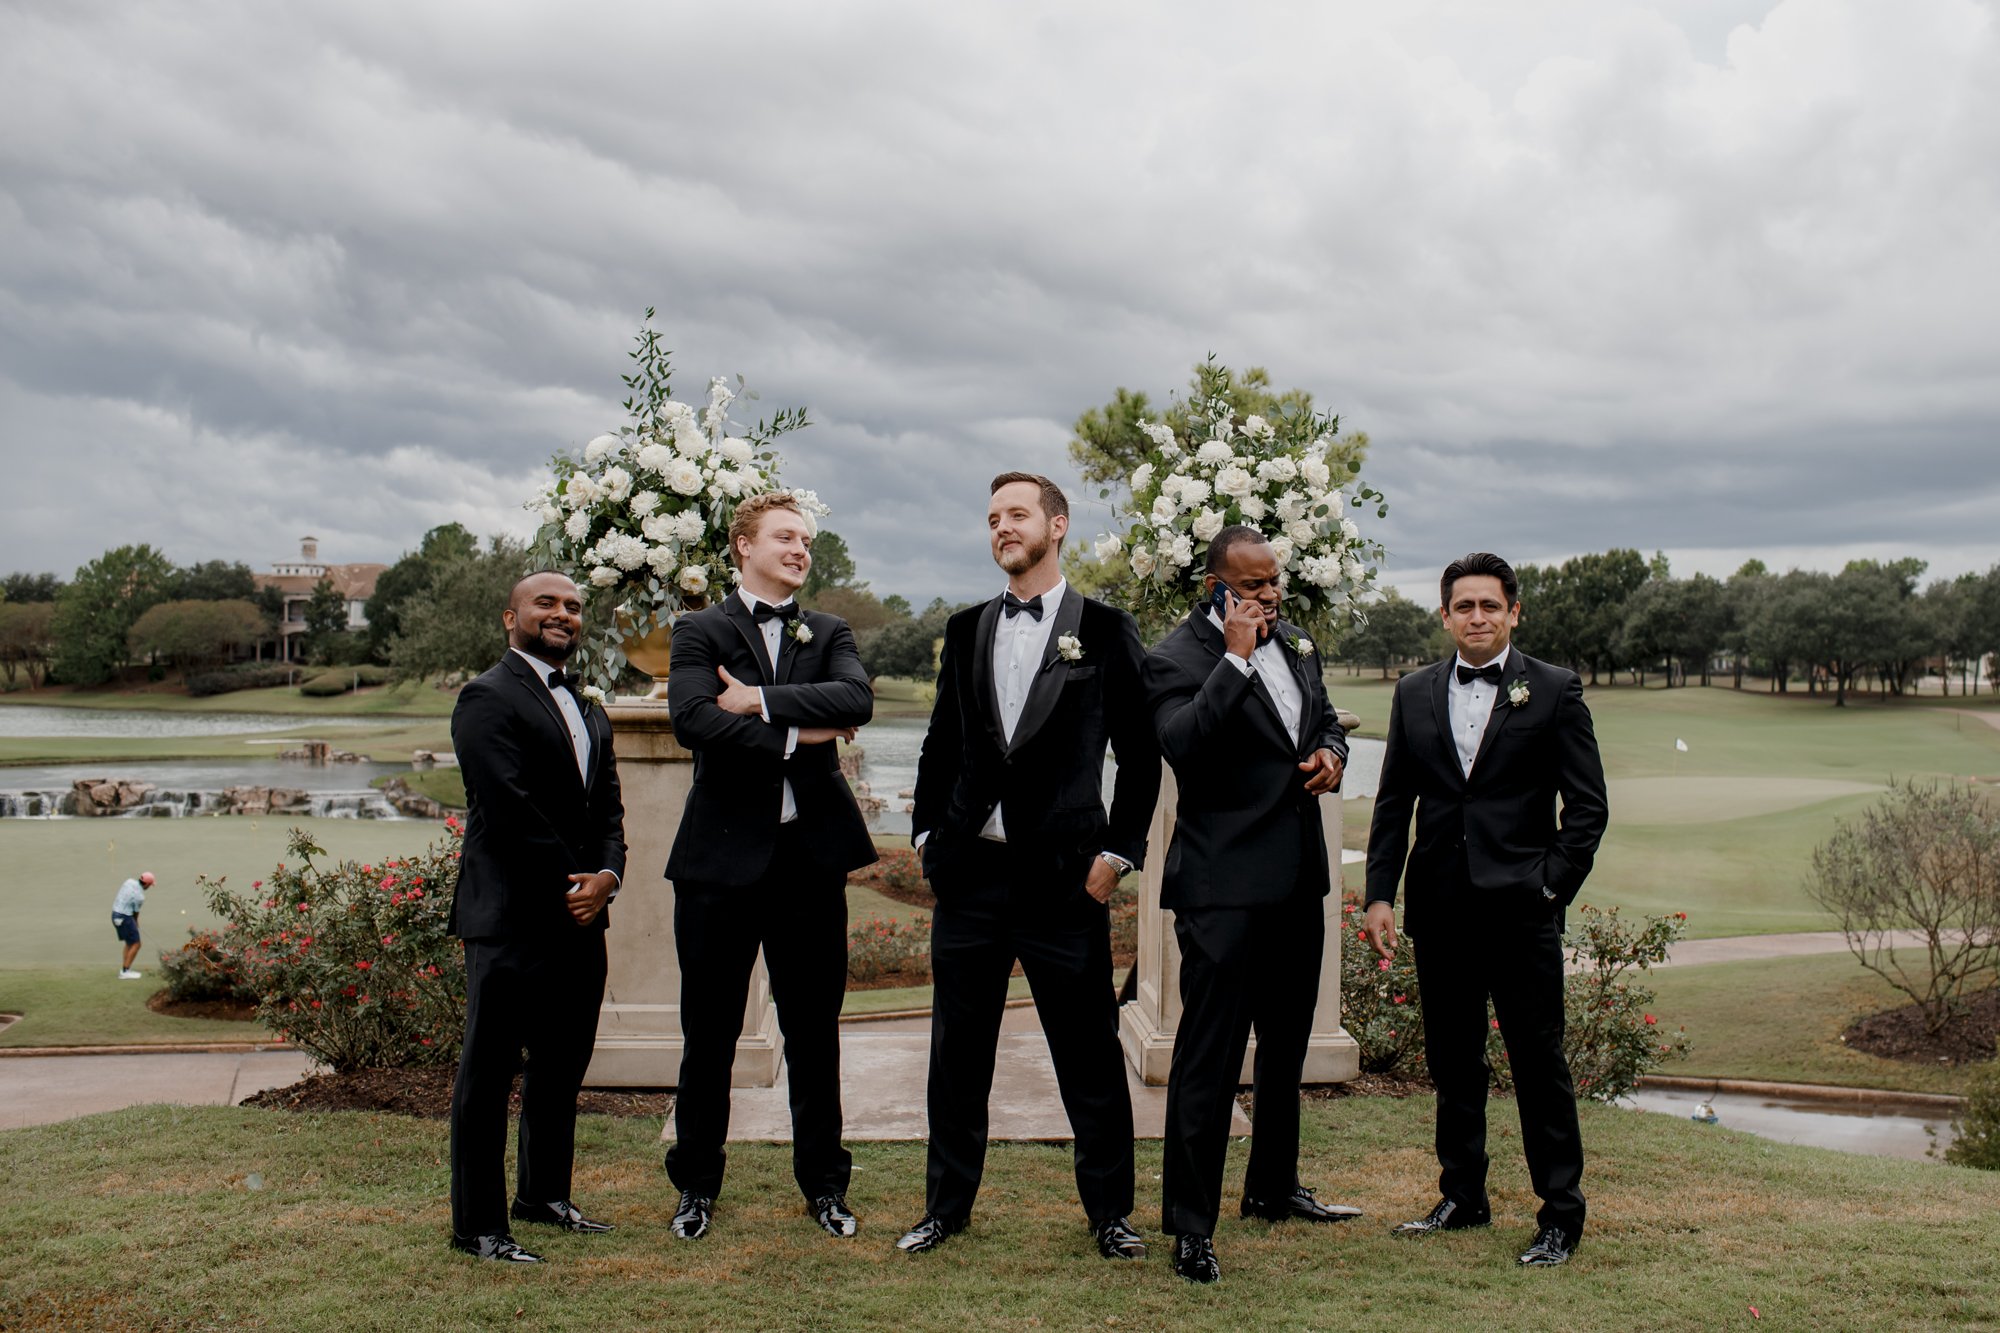 Groom and groomsmen posing looking cool. Wedding at Royal Oaks Country Club